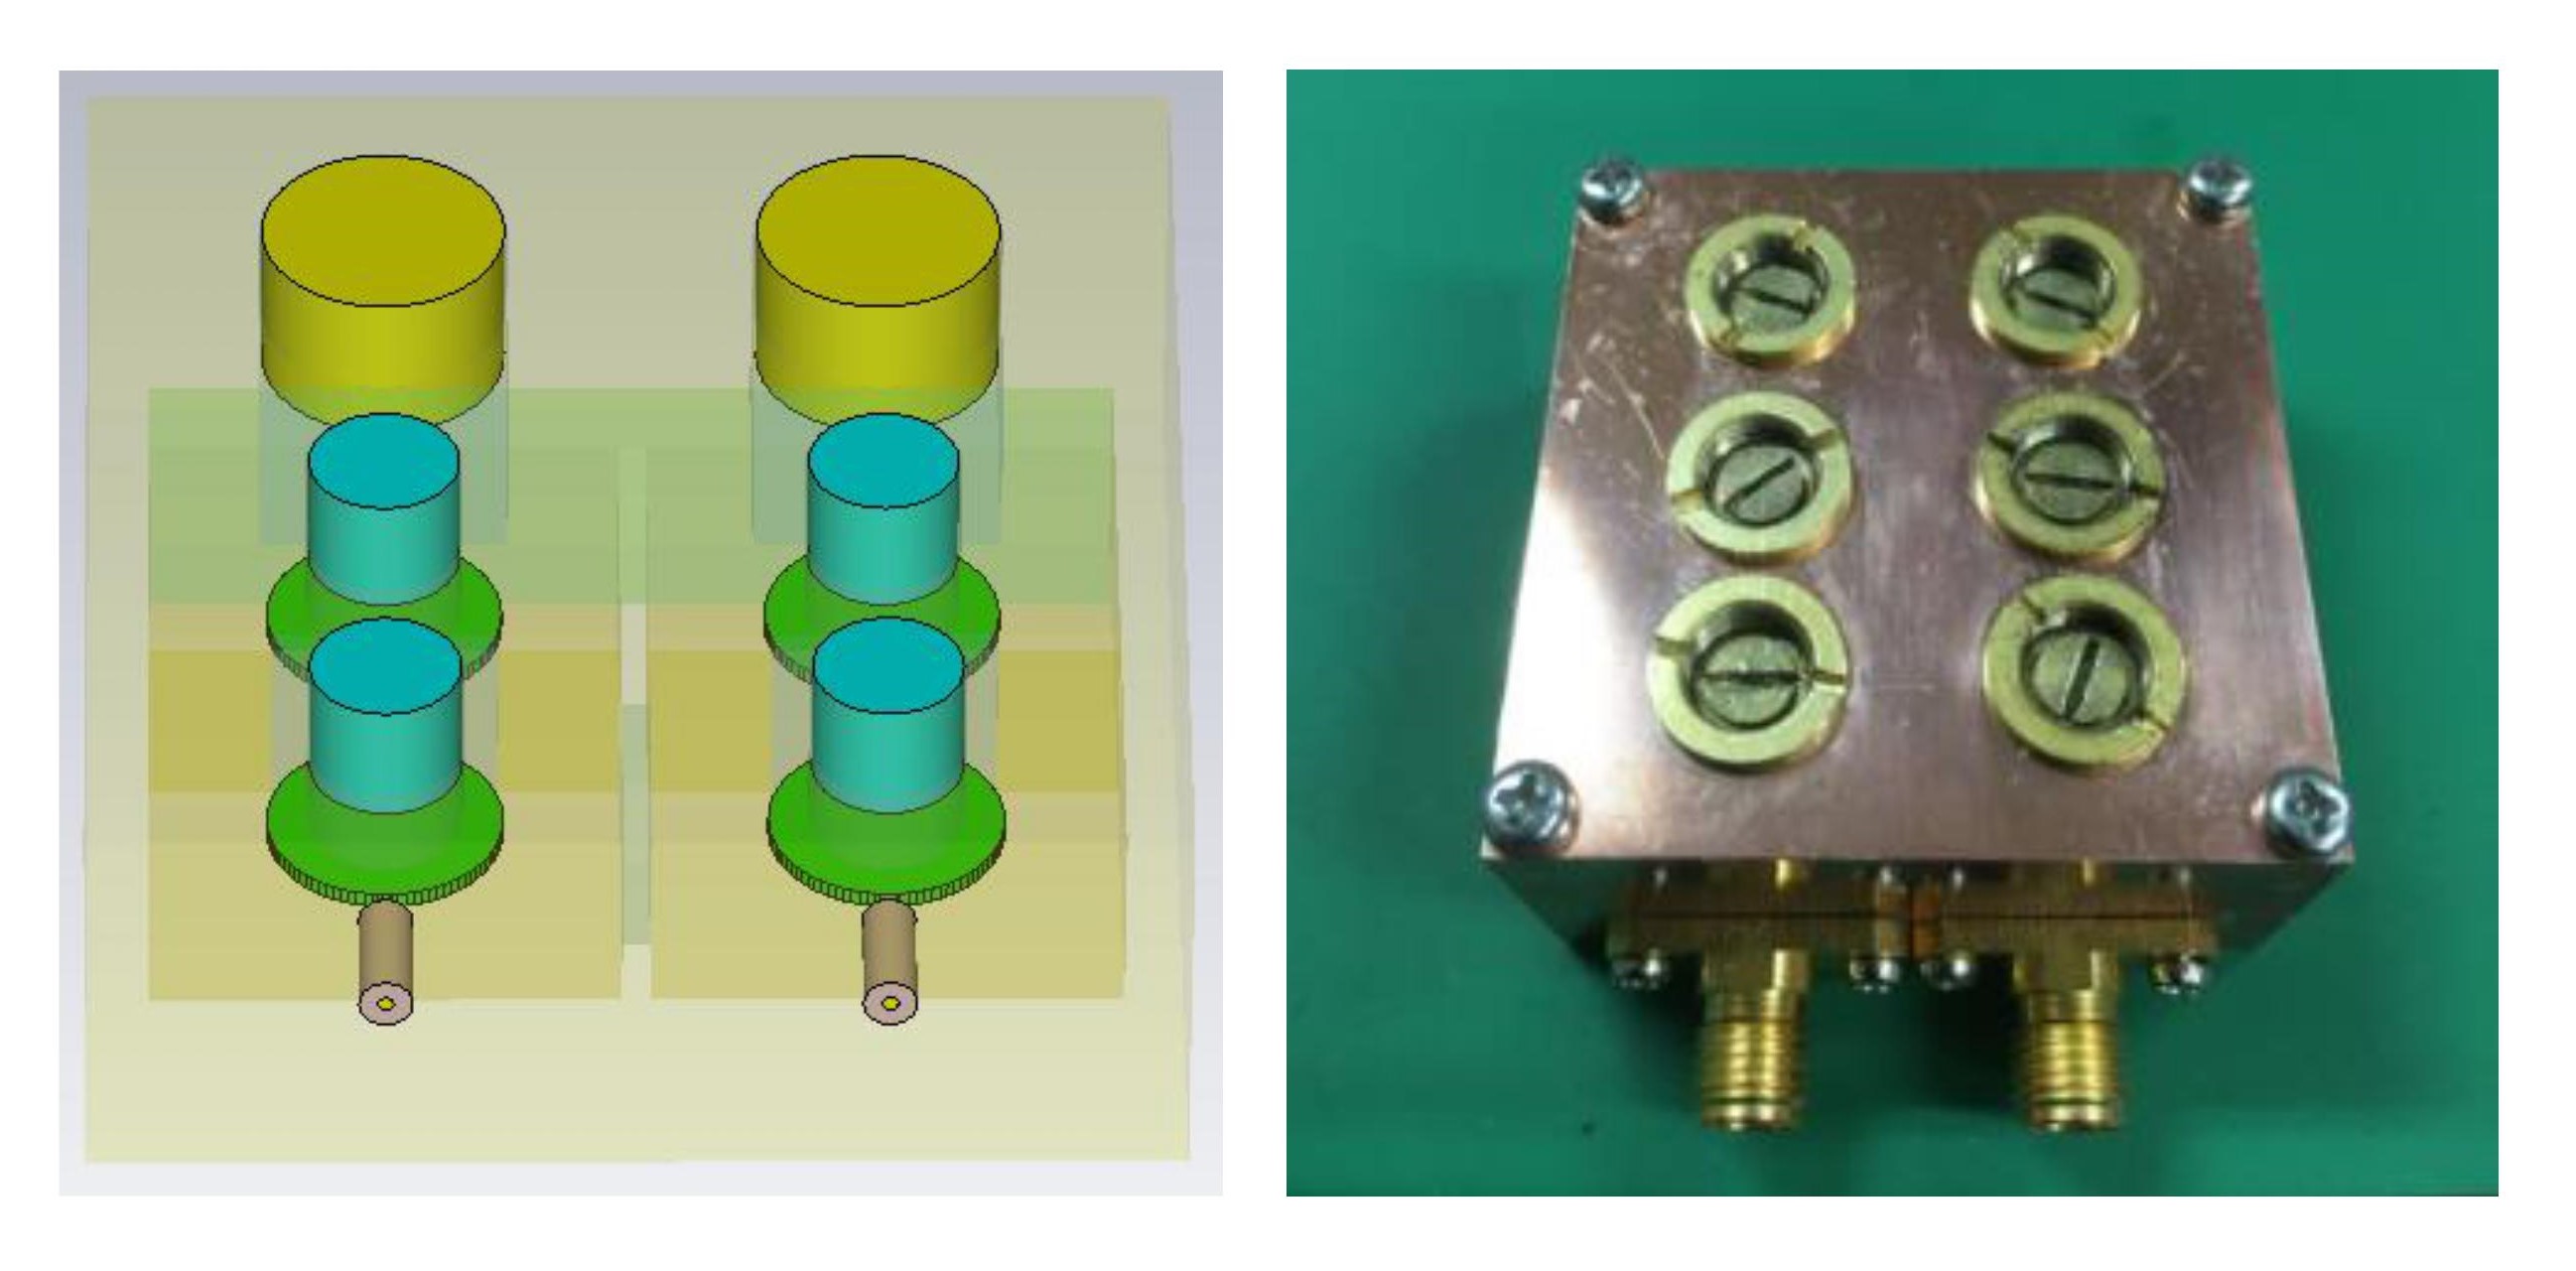 独自に開発した超伝導フィルタの一例。３次元シミュレーションによる解析（左）と実際に作製したフィルタ（右）の画像